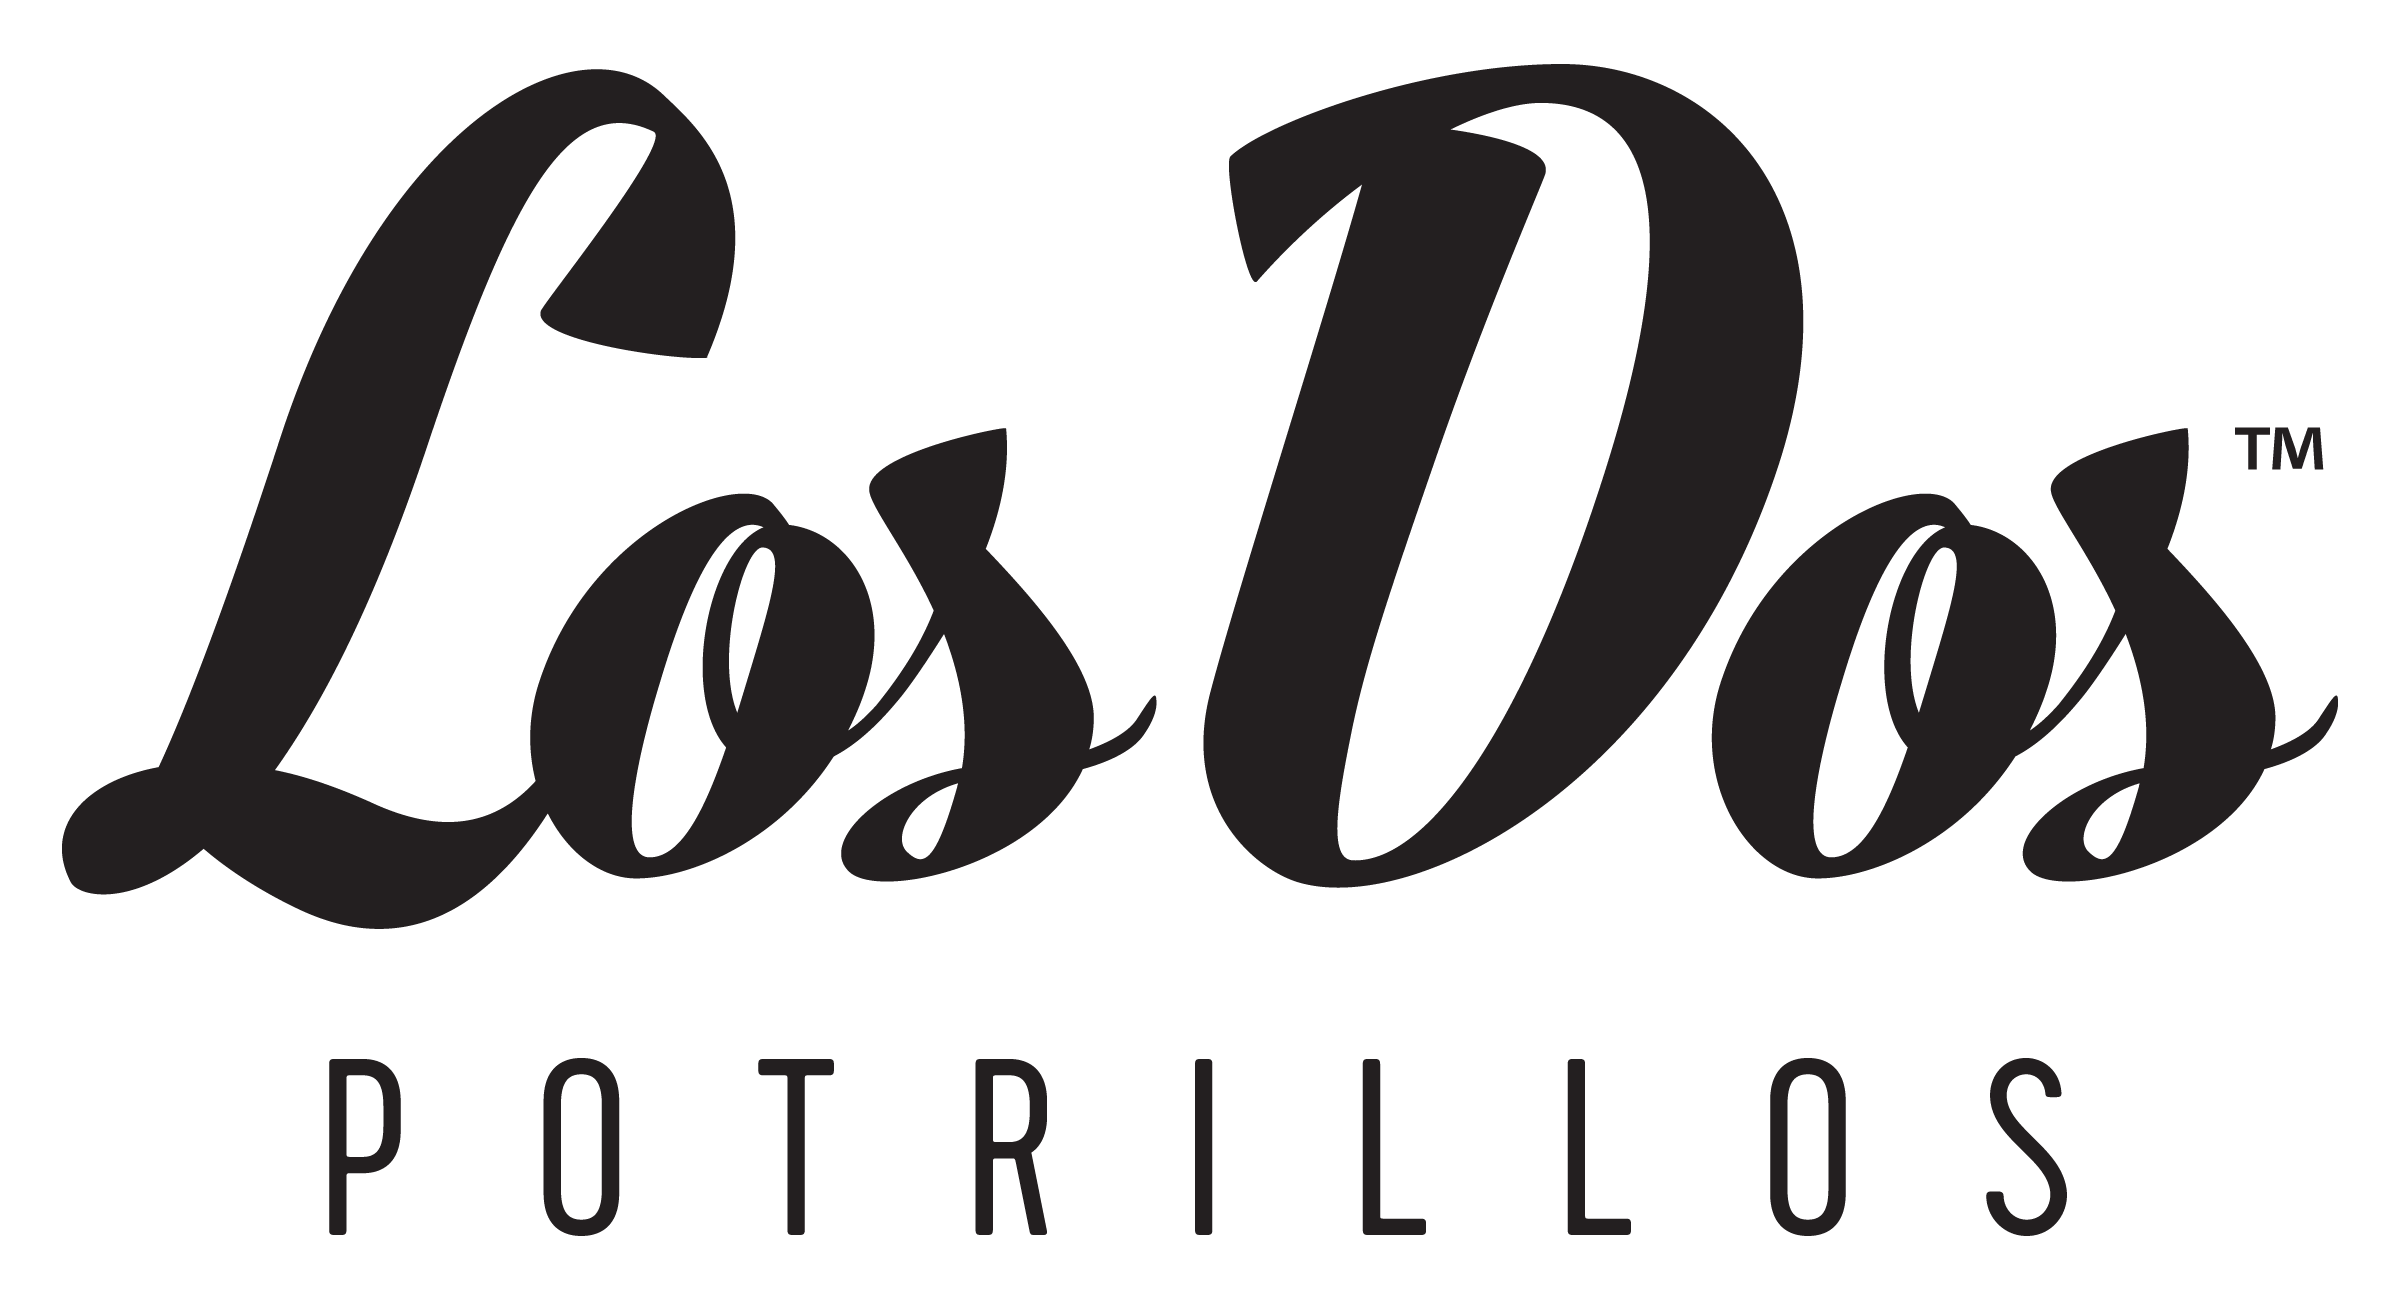 Los Dos Potrillos Mexican Restaurant